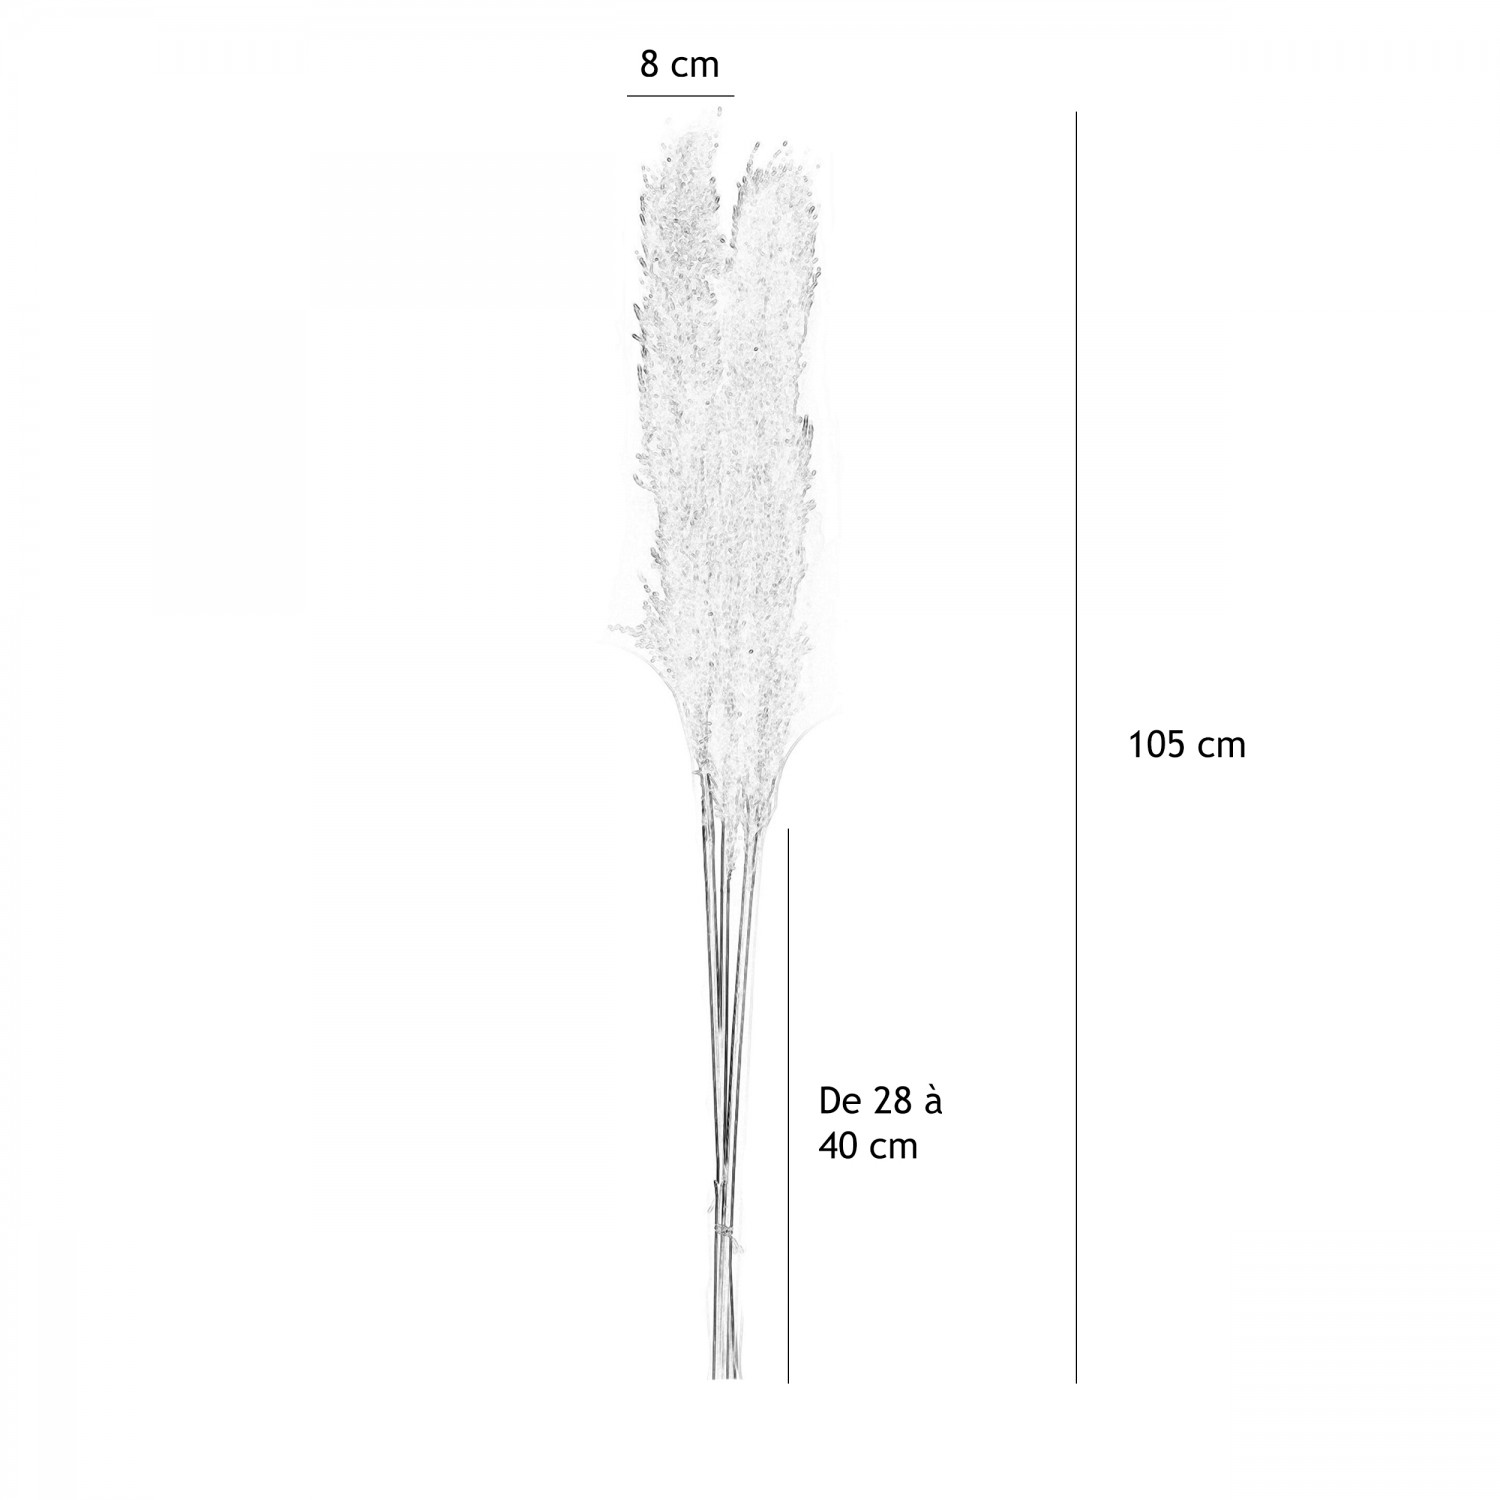 Plumeau plante pampa naturel 105cm lot de 6 graphique avec les dimensions